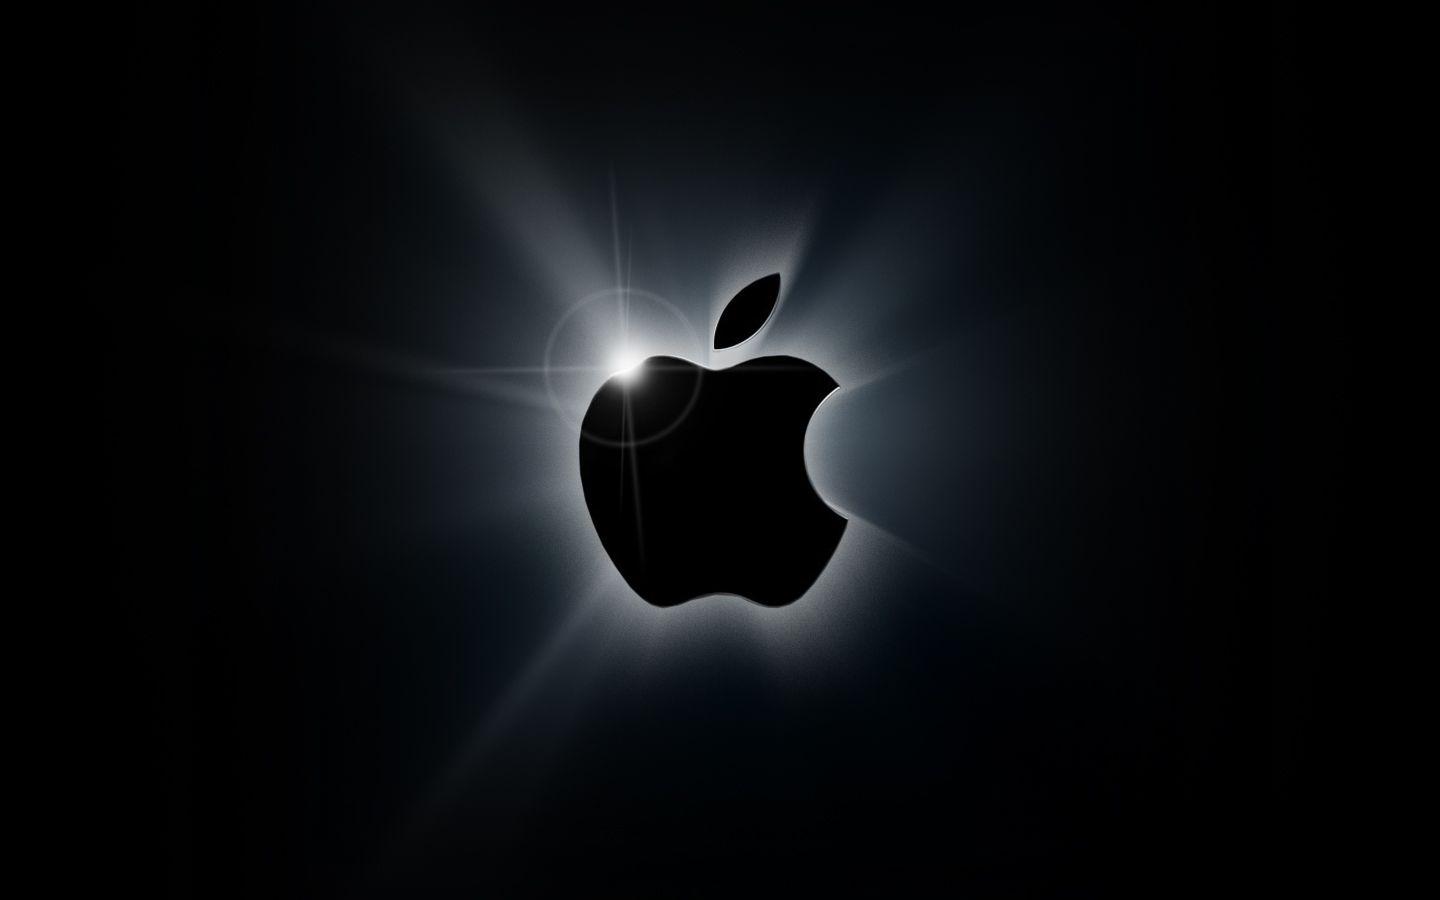 All Black Apple Logo - cr apple store: Black Apple Logo